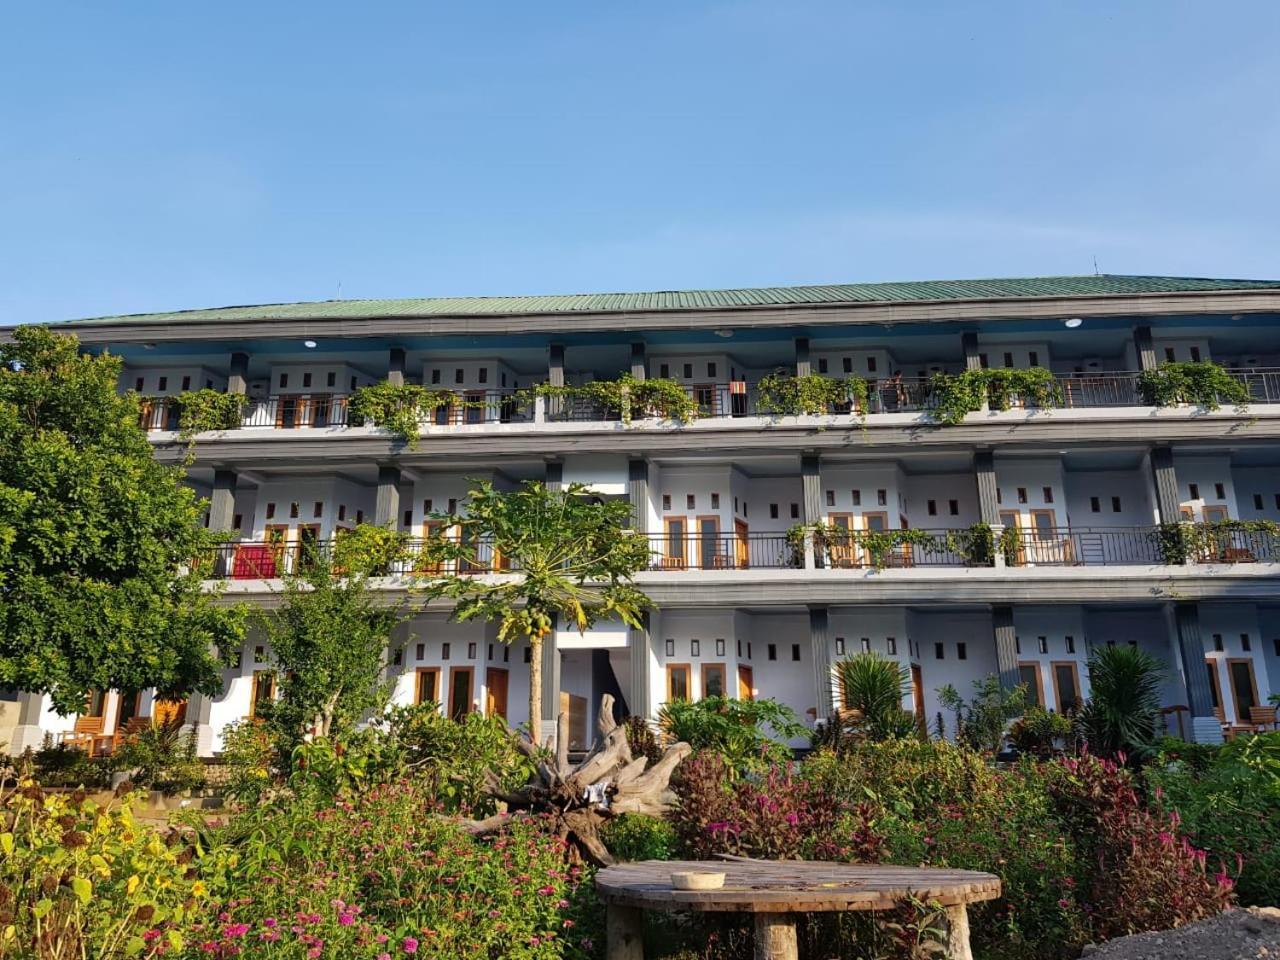 Hotel Kasuwari Лабуан-Бахо Экстерьер фото